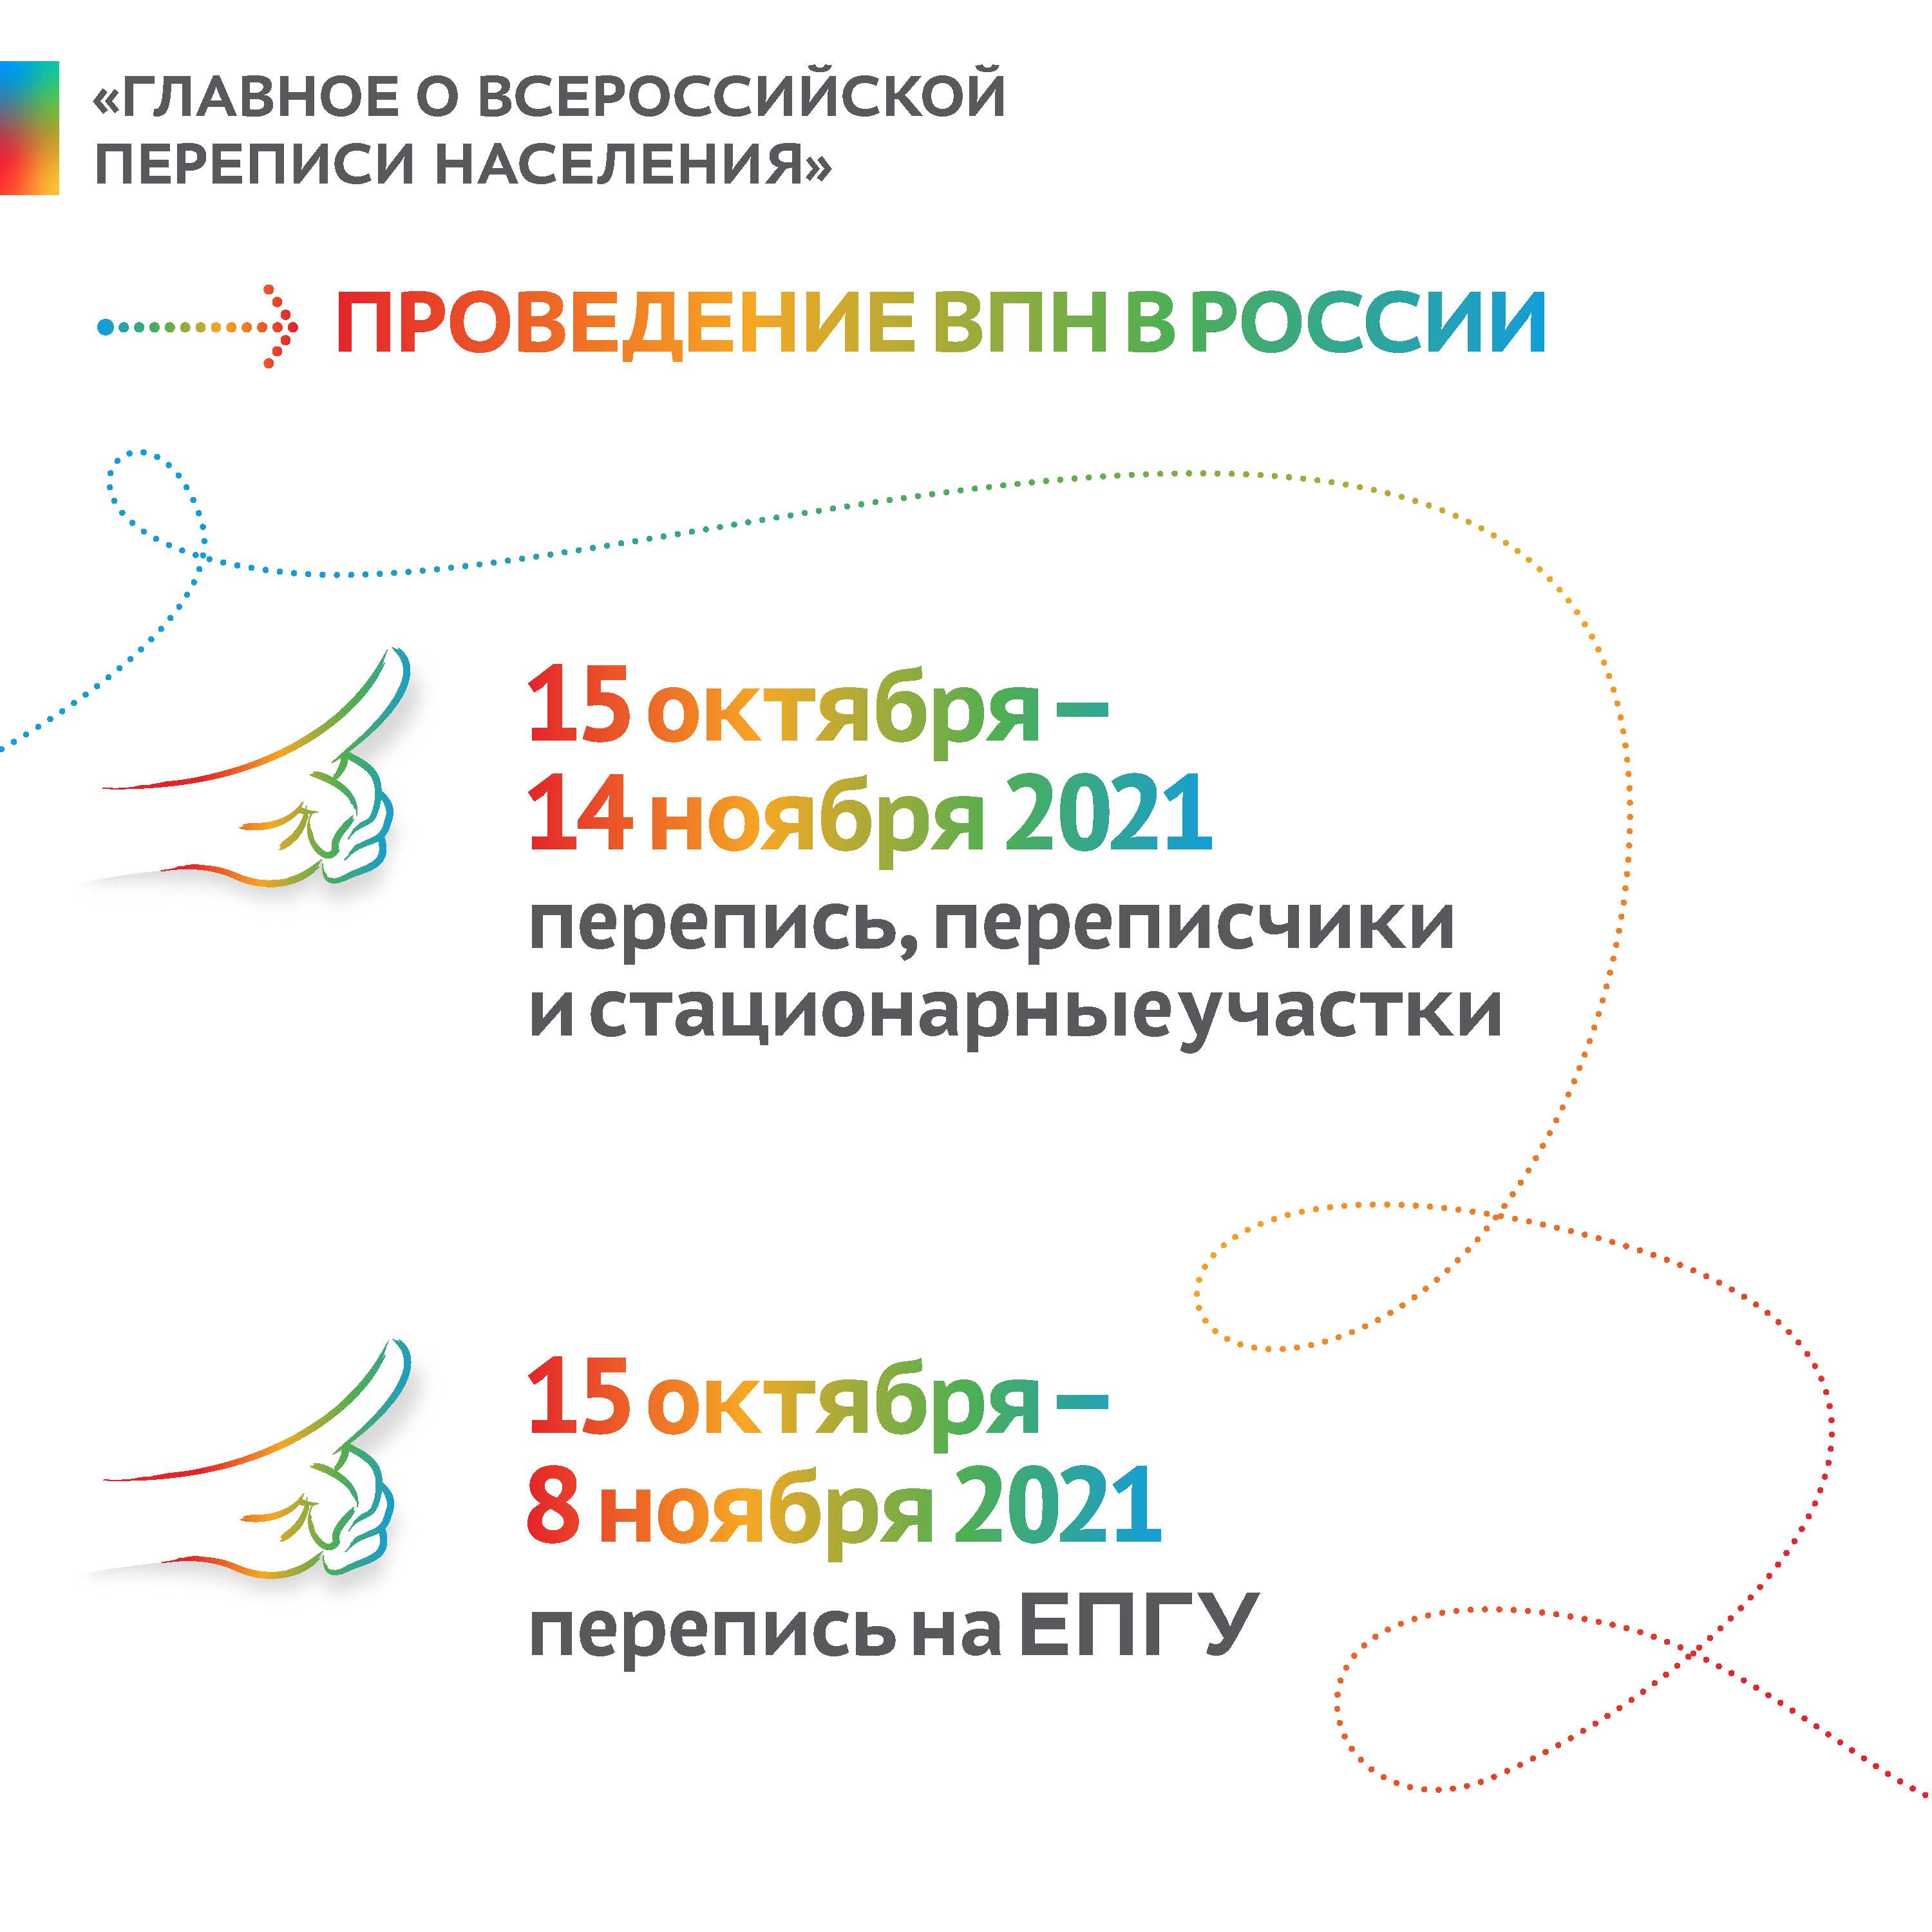 С 15 октября по 14 ноября 2021 года состоится Всероссийская перепись населения